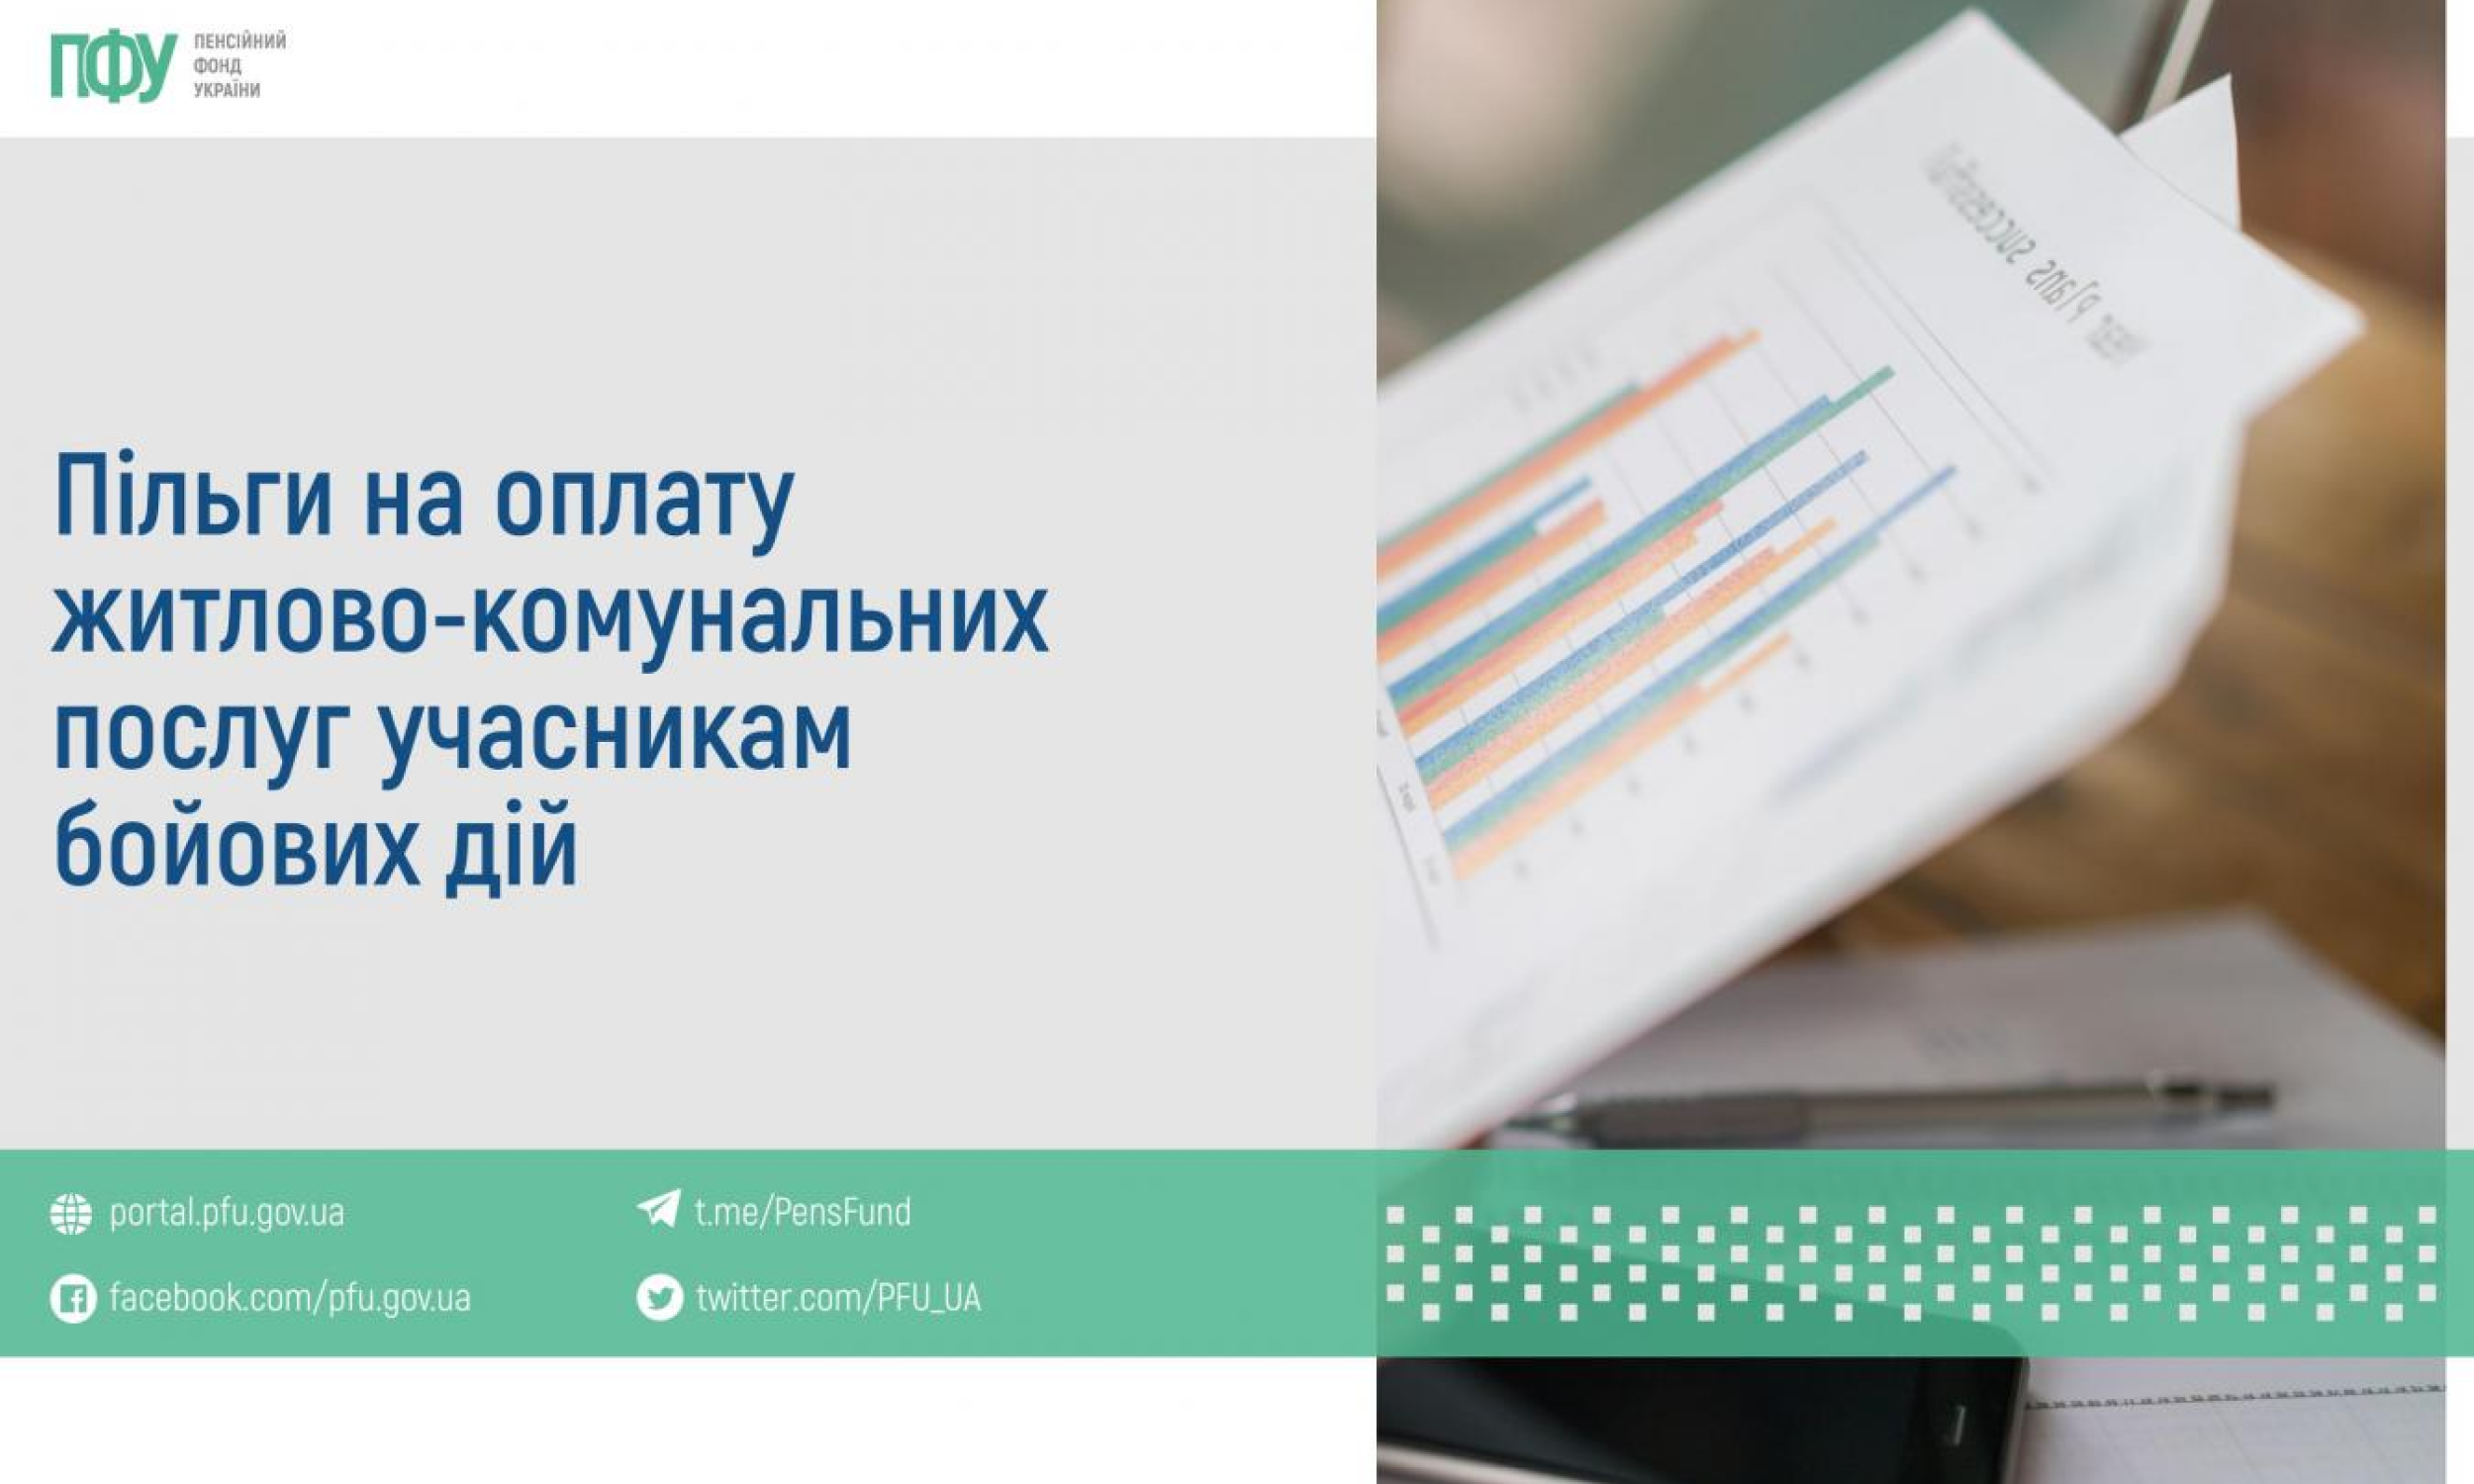 Пенсійний фонд України інформує про пільги на оплату житлово-комунальних послуг учасникам бойових дій